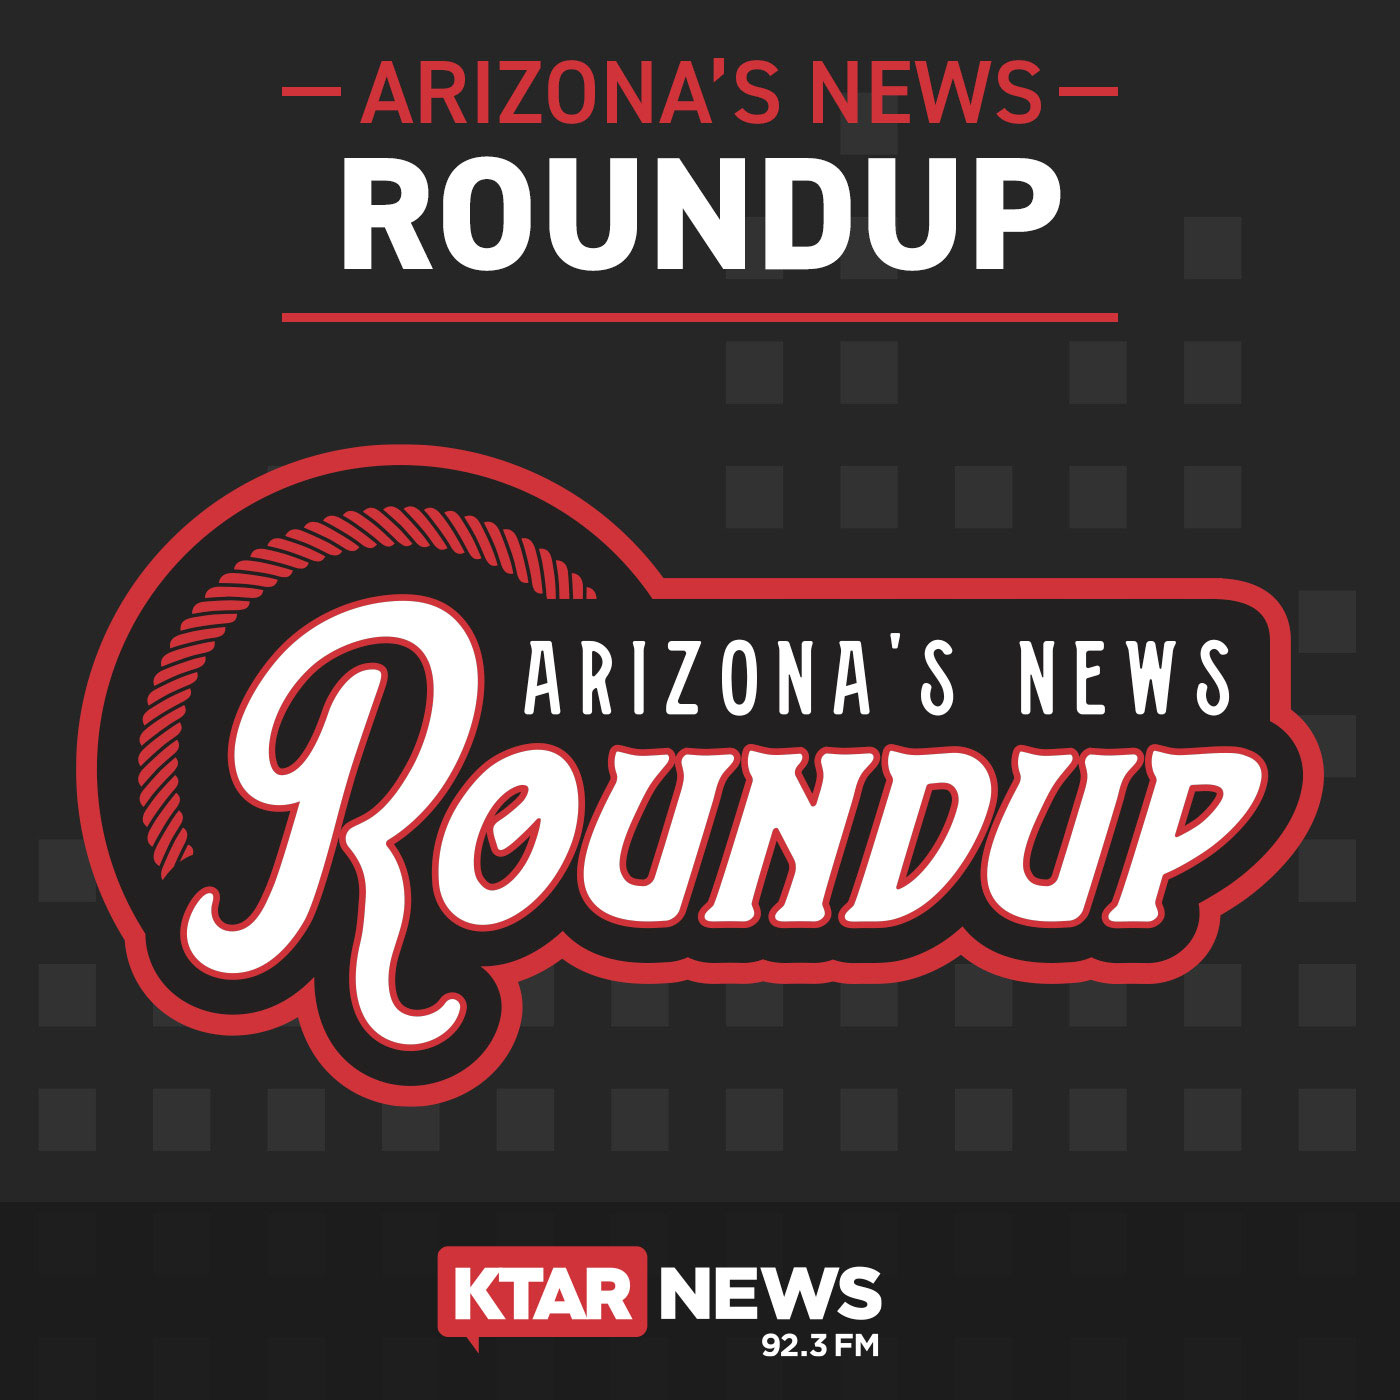 Arizona's News Roundup